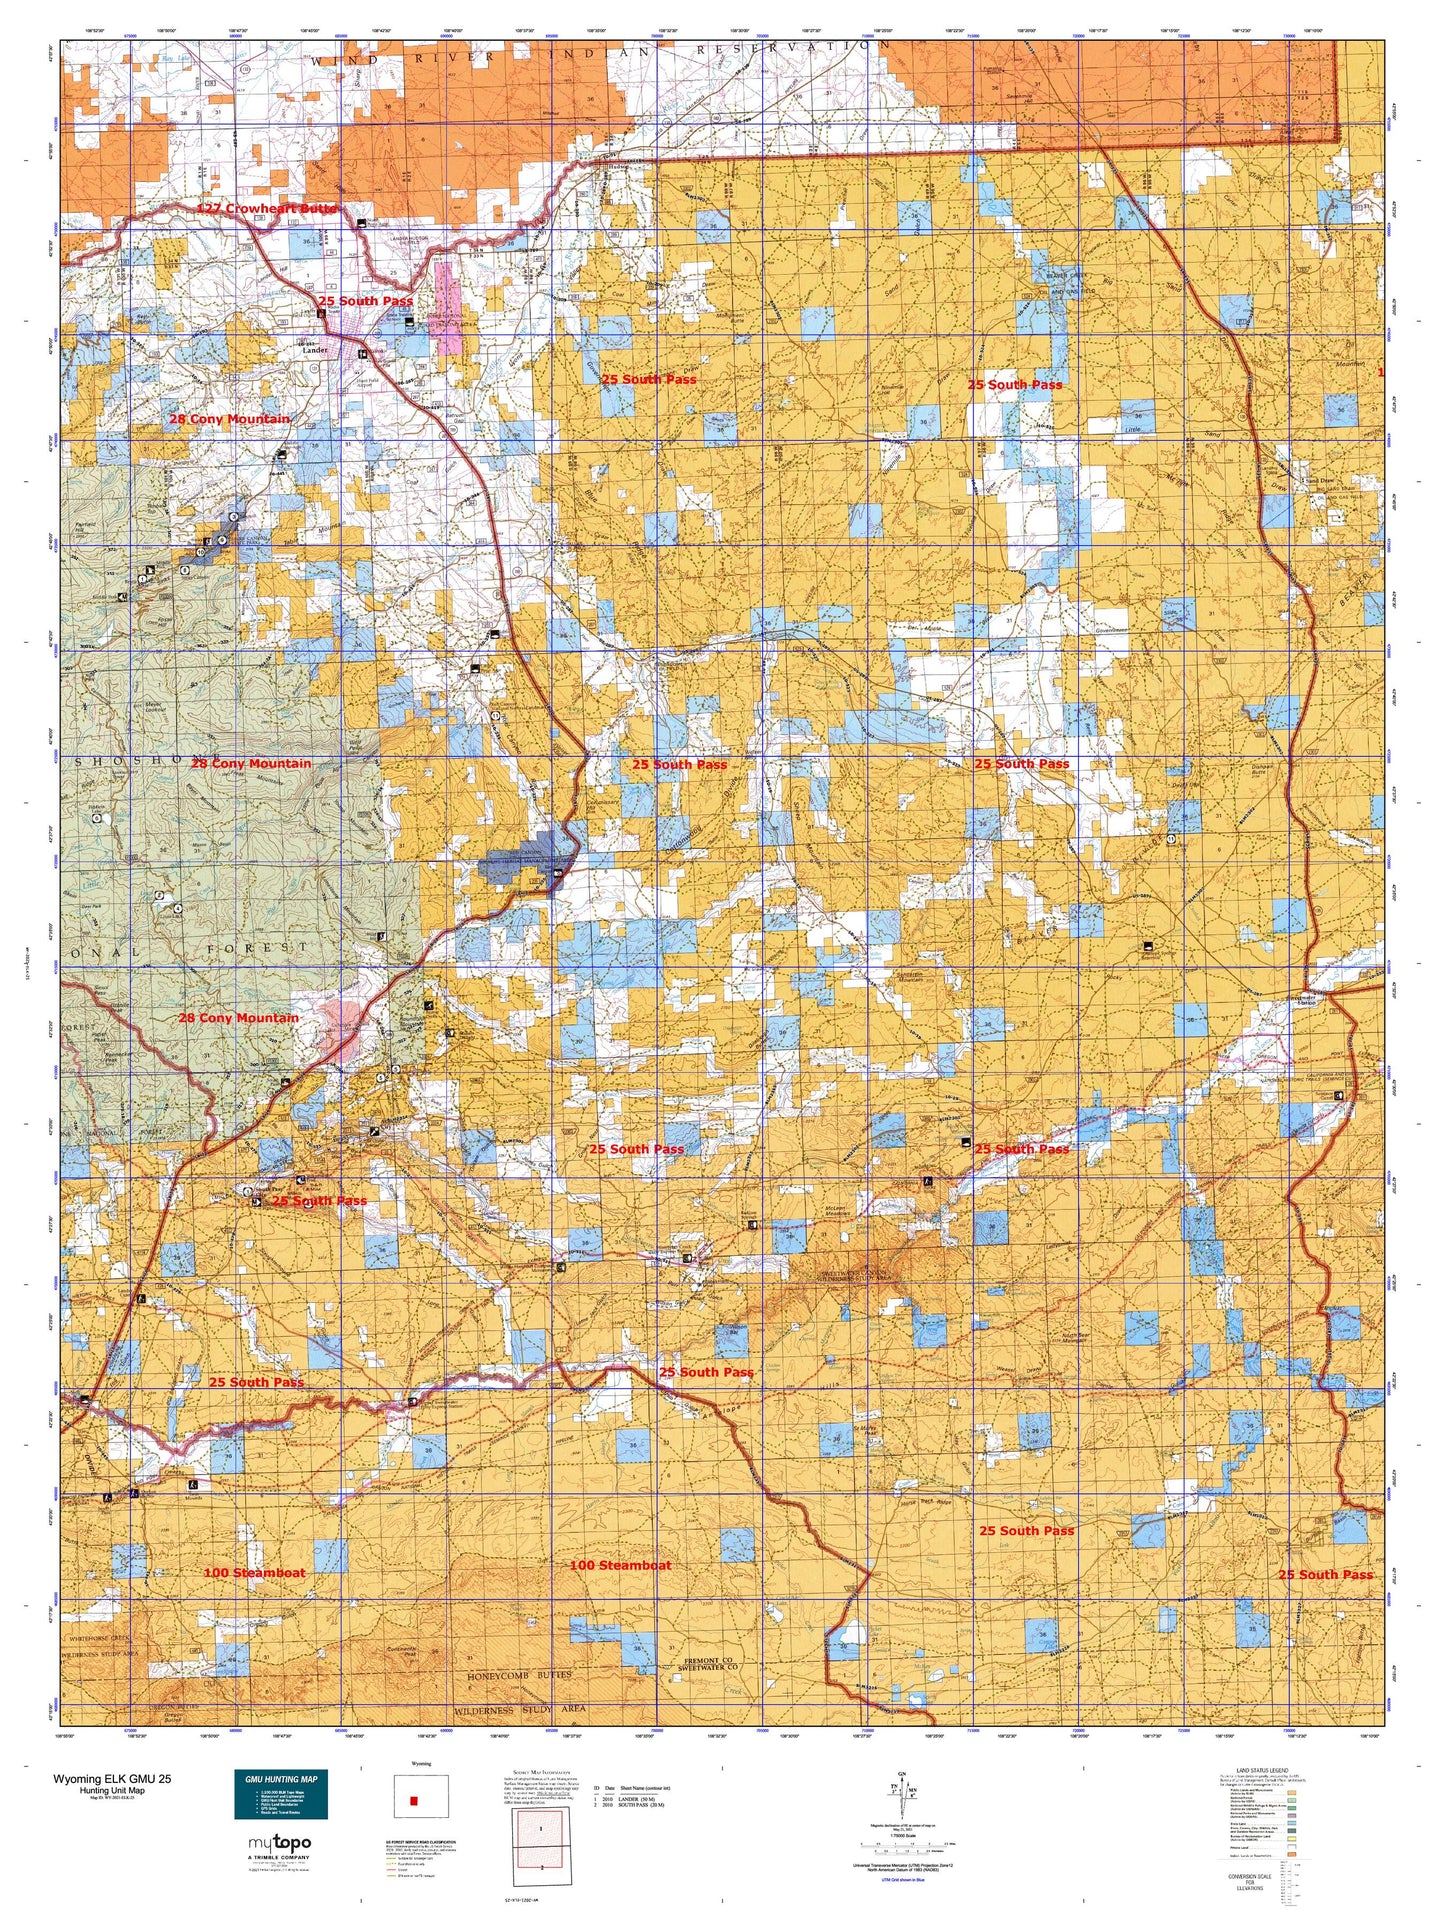 Wyoming Elk GMU 25 Map Image